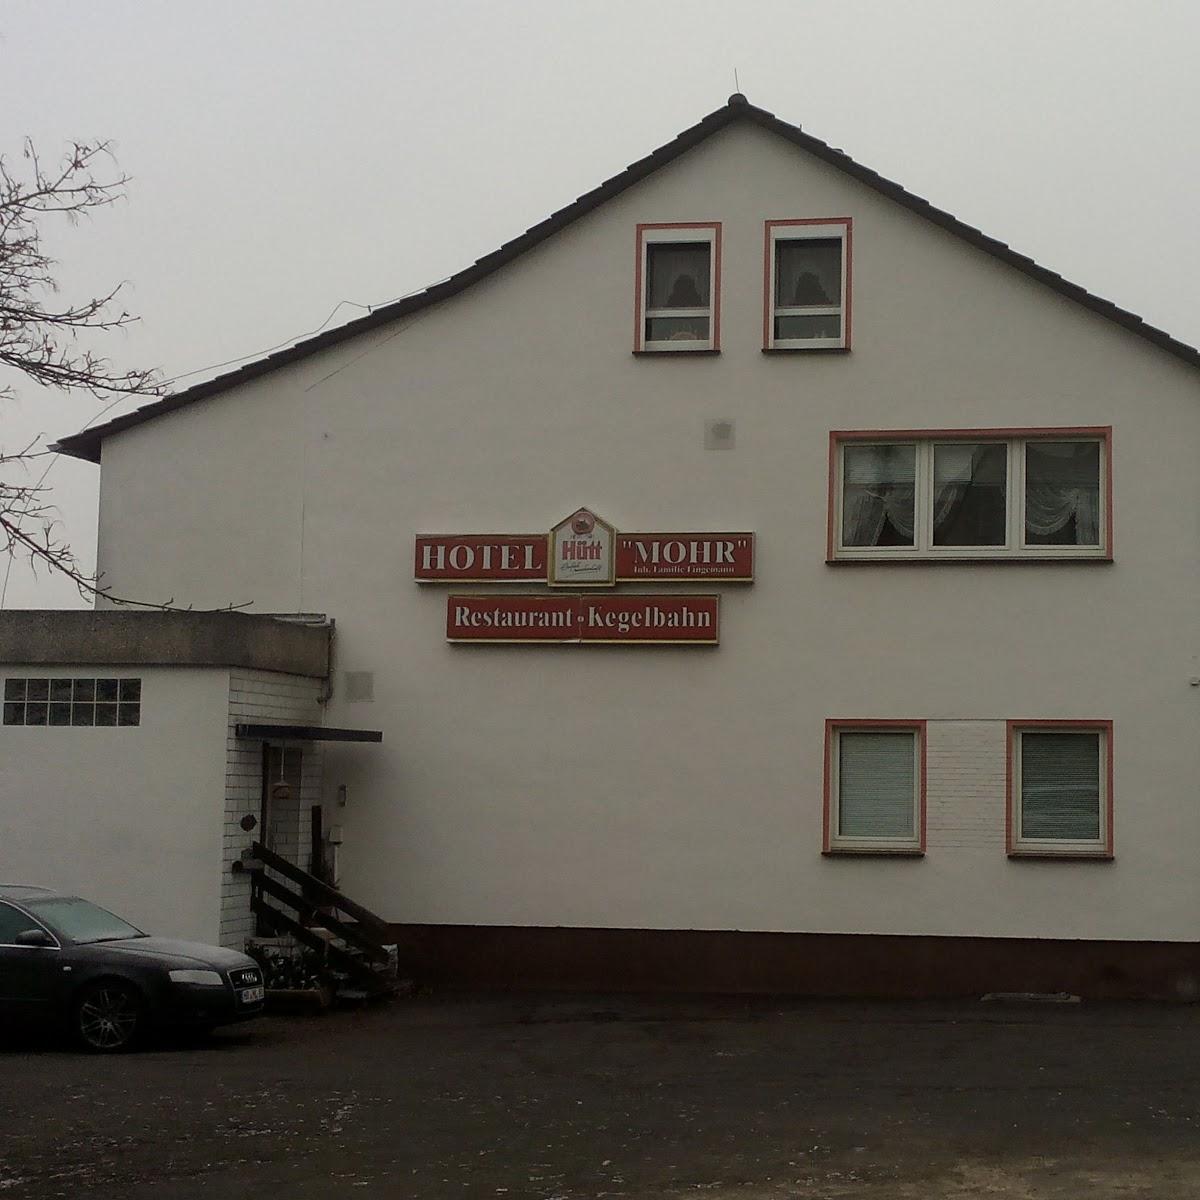 Restaurant "Hotel & Restaurant Mohr" in Guxhagen